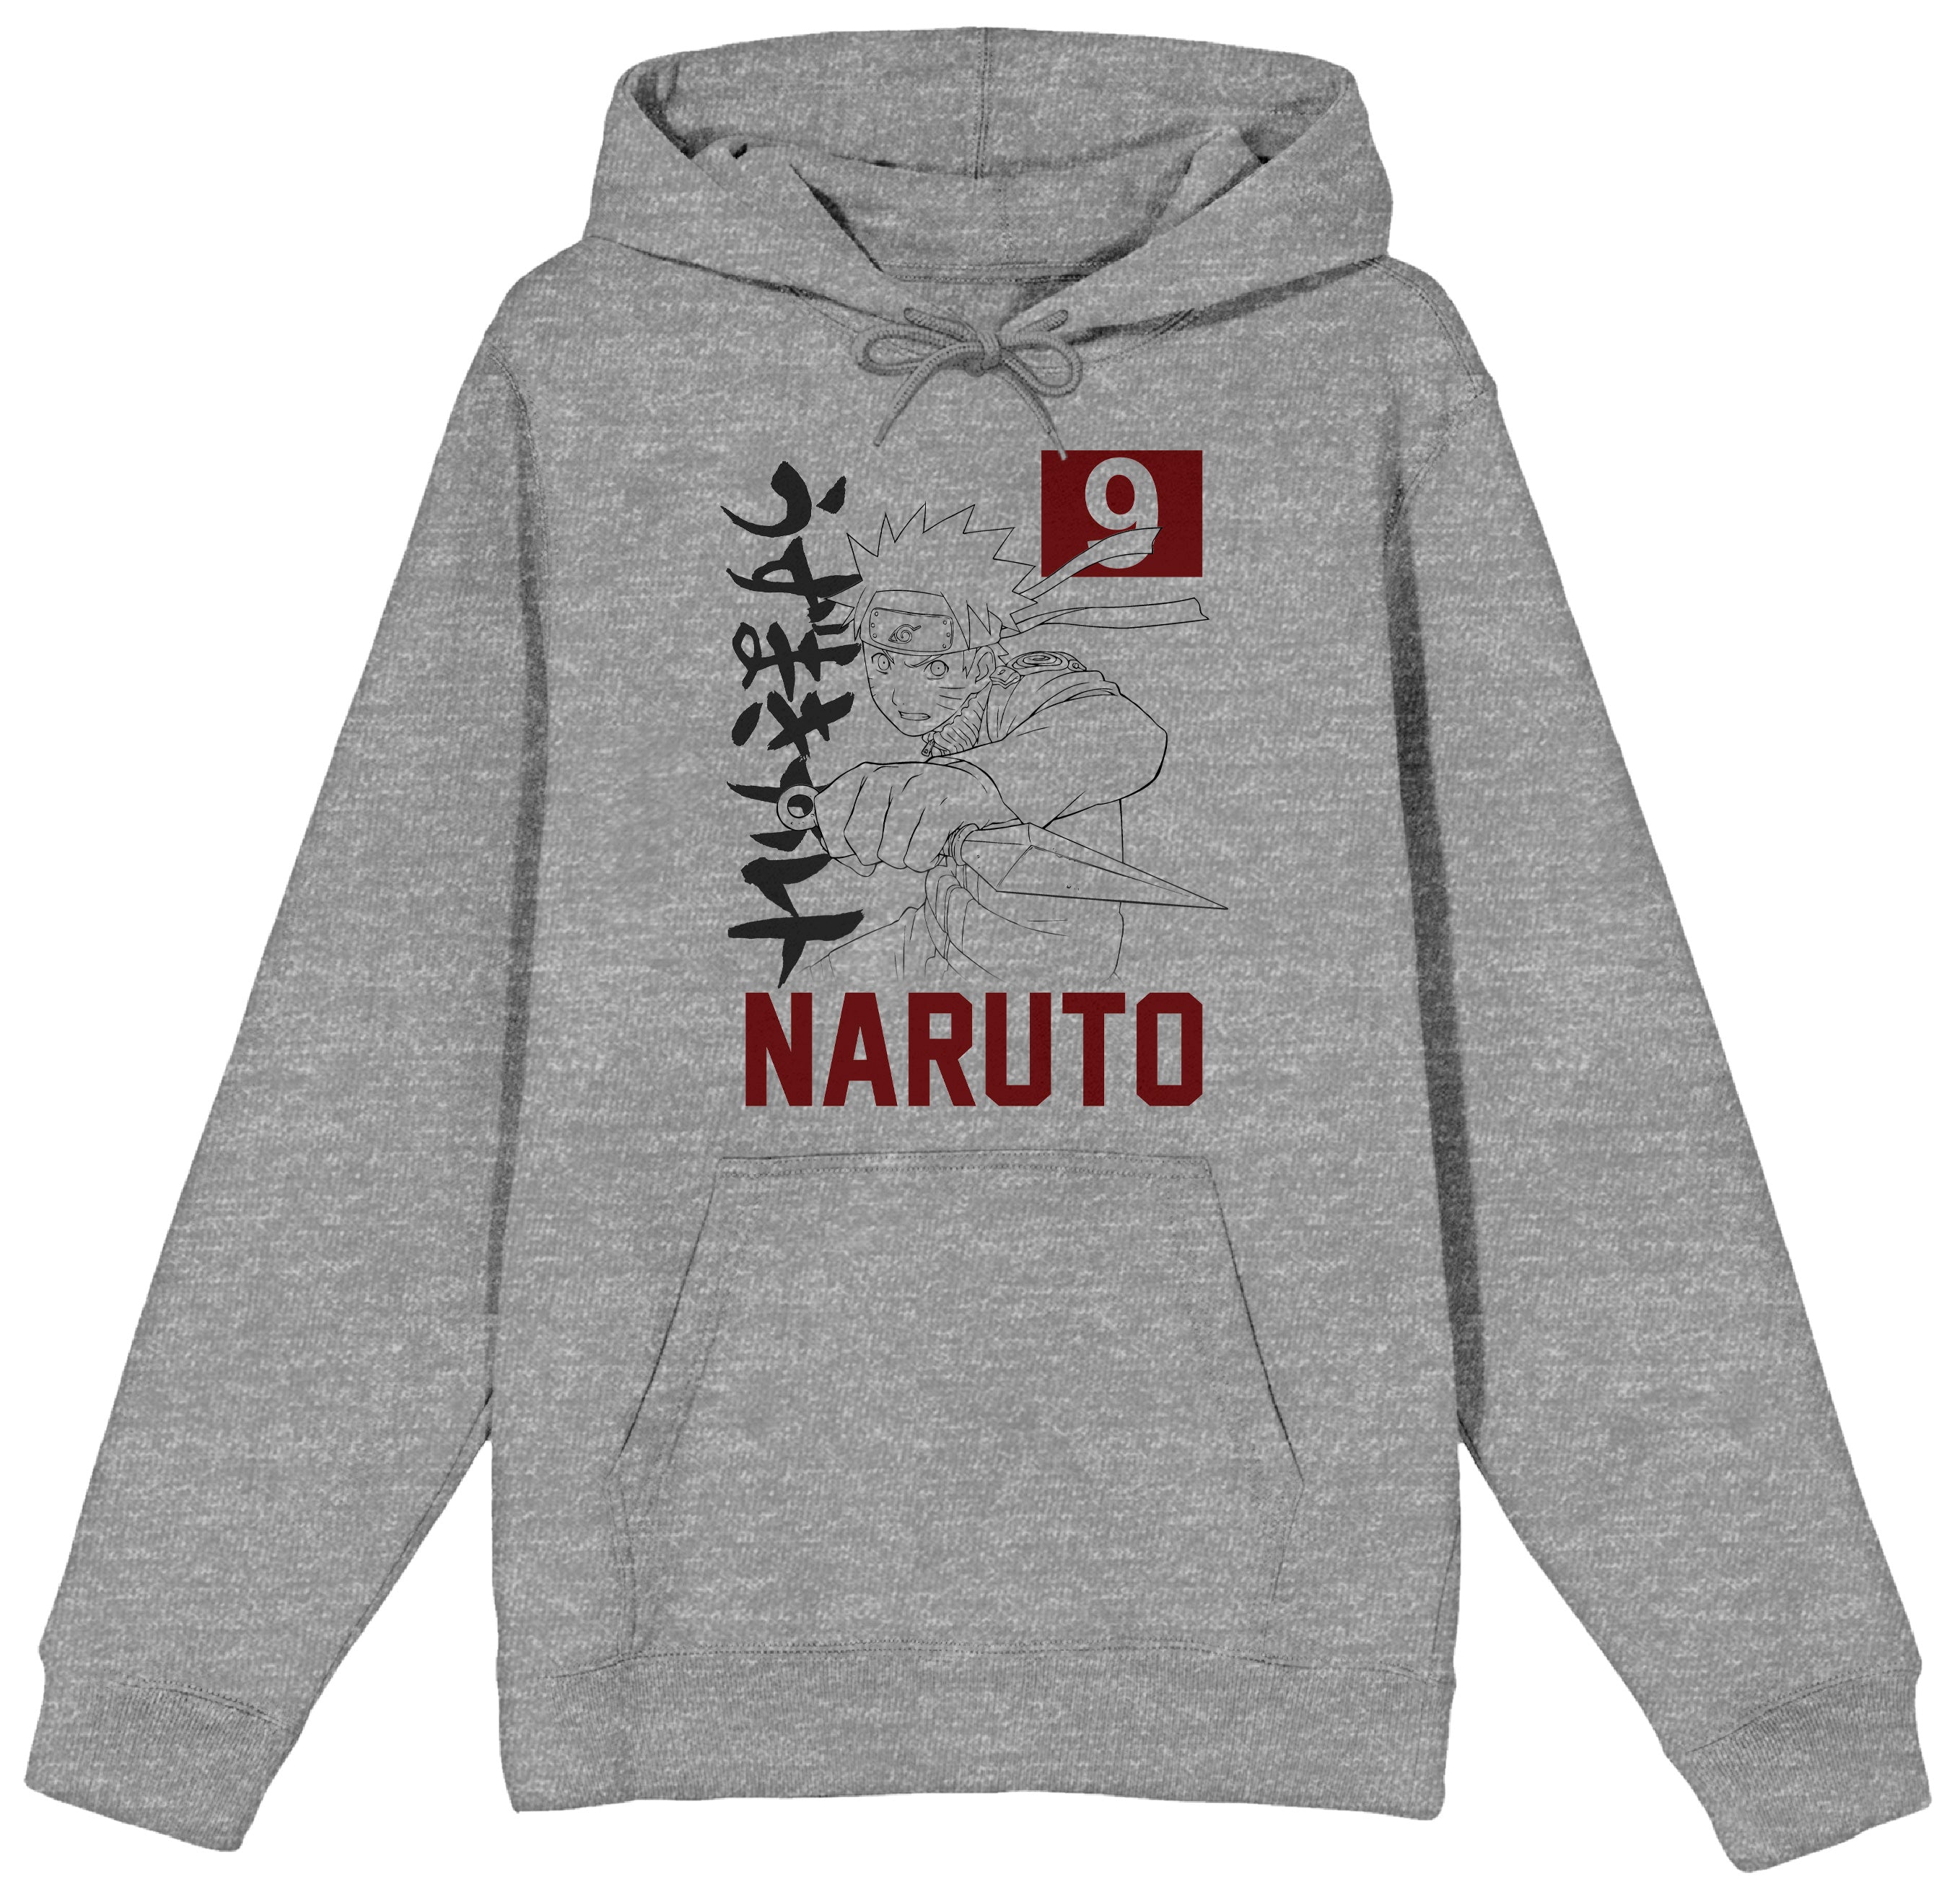 Naruto Shippuden - Naruto 9 Kanji Hoodie image count 0